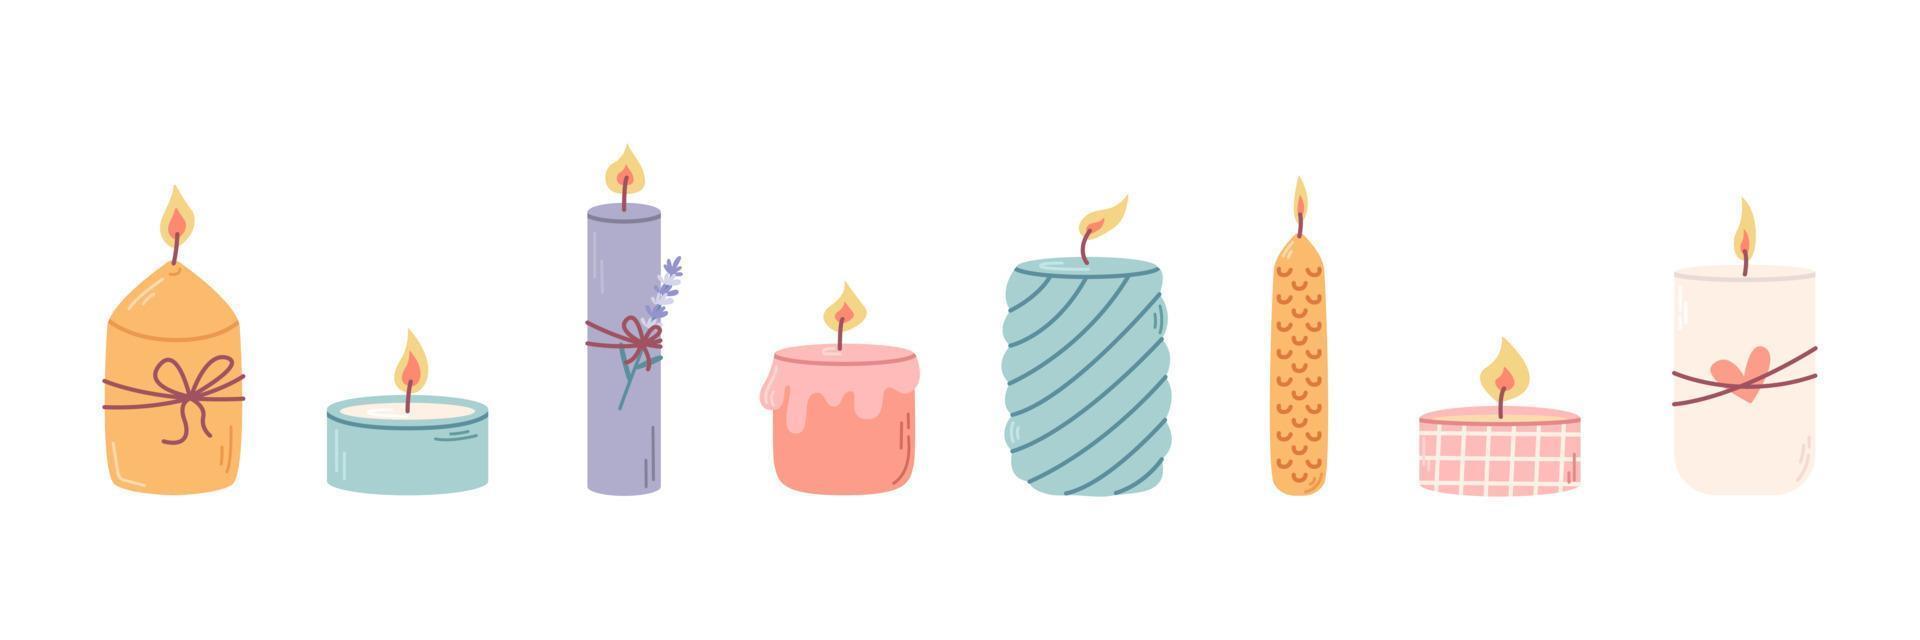 conjunto de diferentes velas perfumadas decorativas en candelabros para relajación y spa. ilustración plana vectorial vector